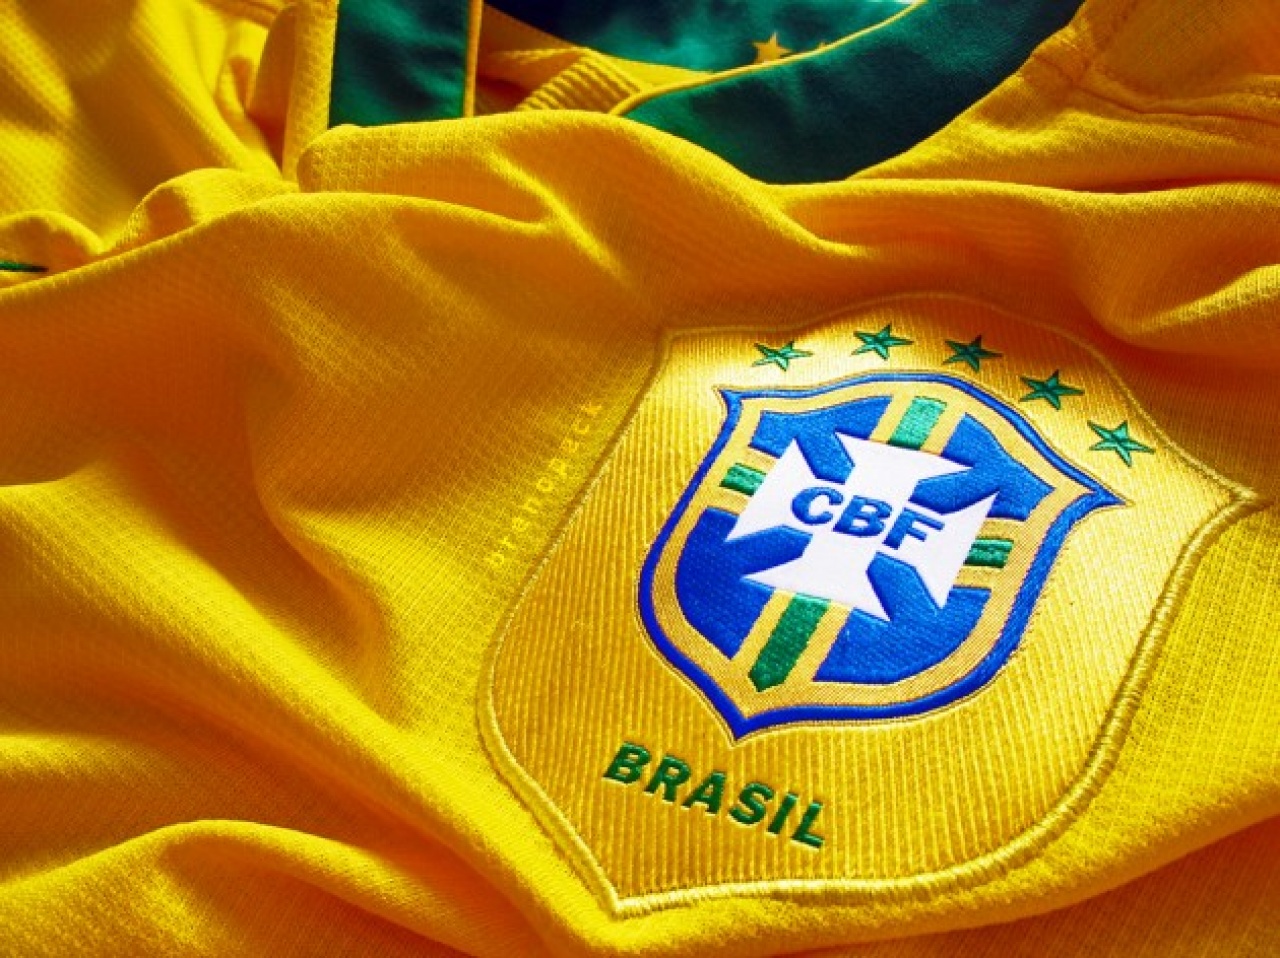 Brazil világbajnok a Szpari meccsén